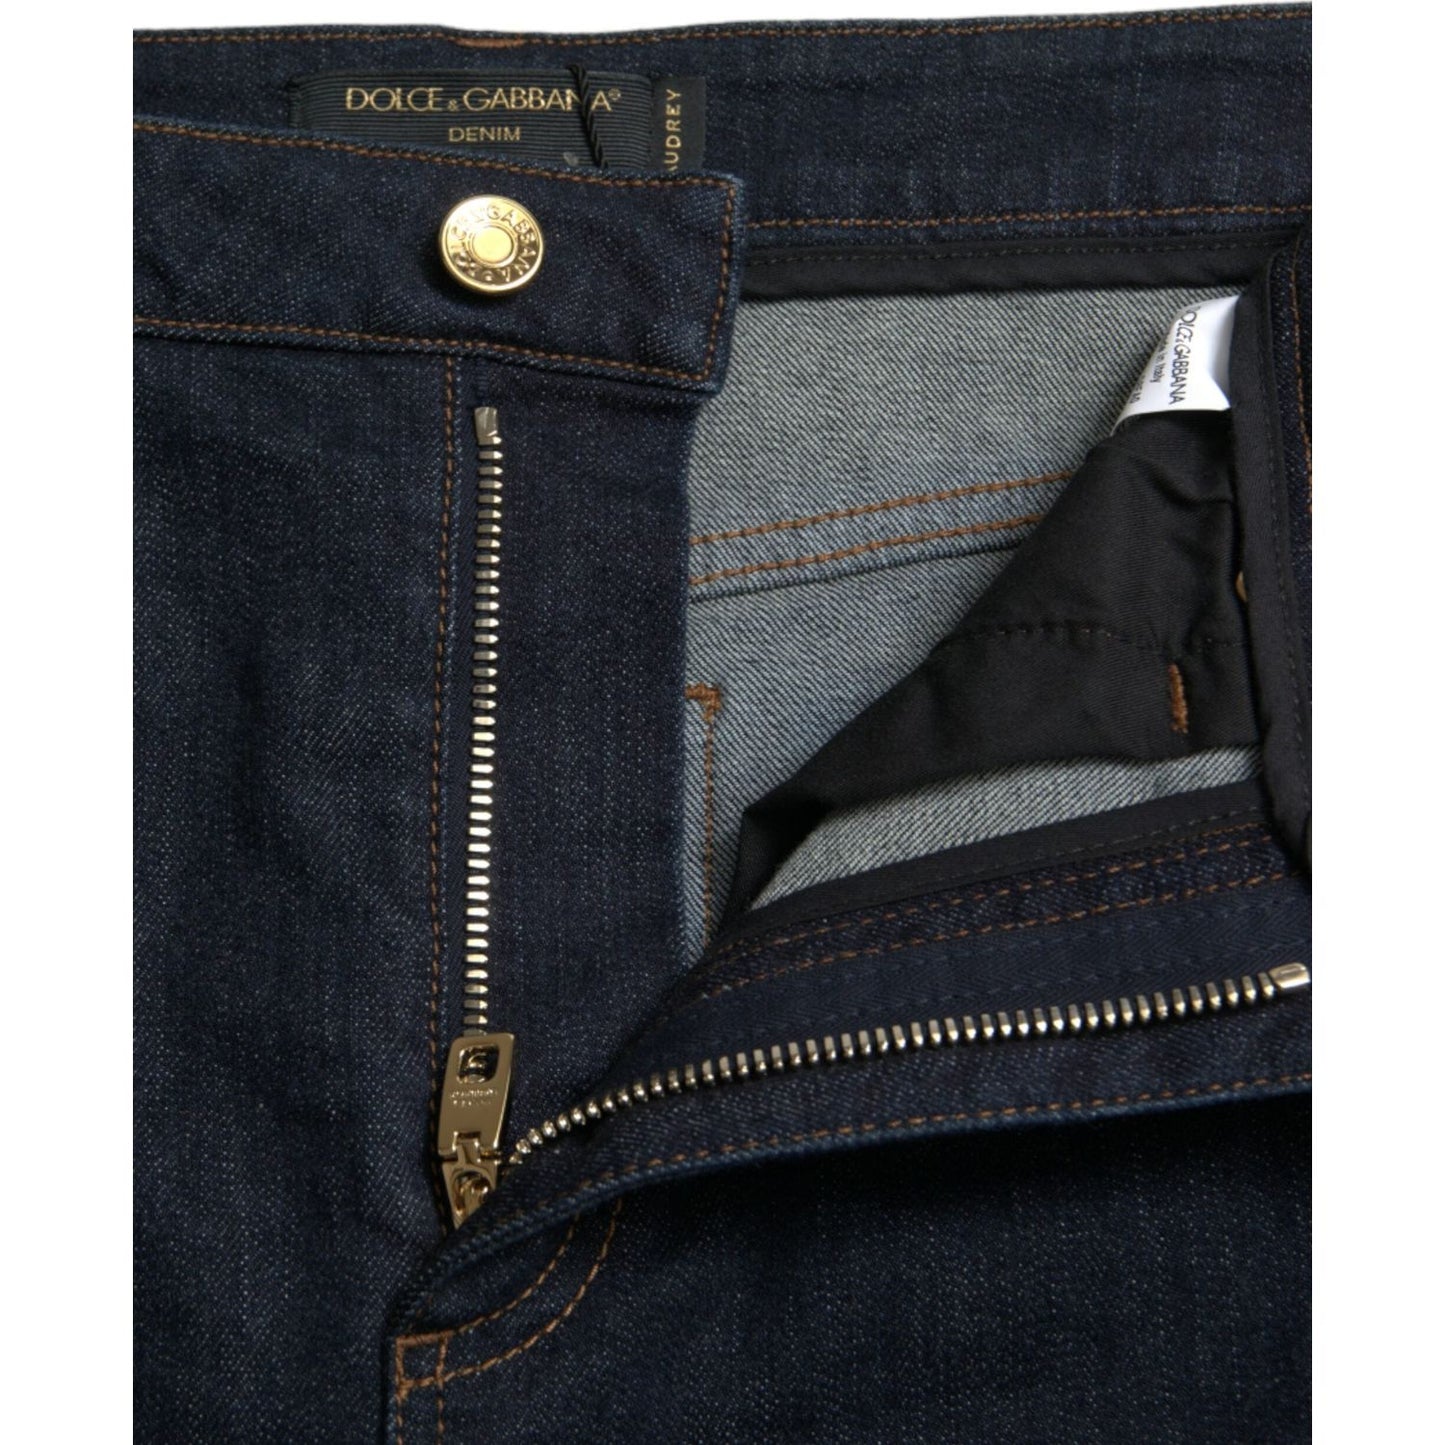 Dolce & Gabbana Sleek Mid-Waist Stretch Denim Jeans blue-cotton-stretch-denim-skinny-jeans